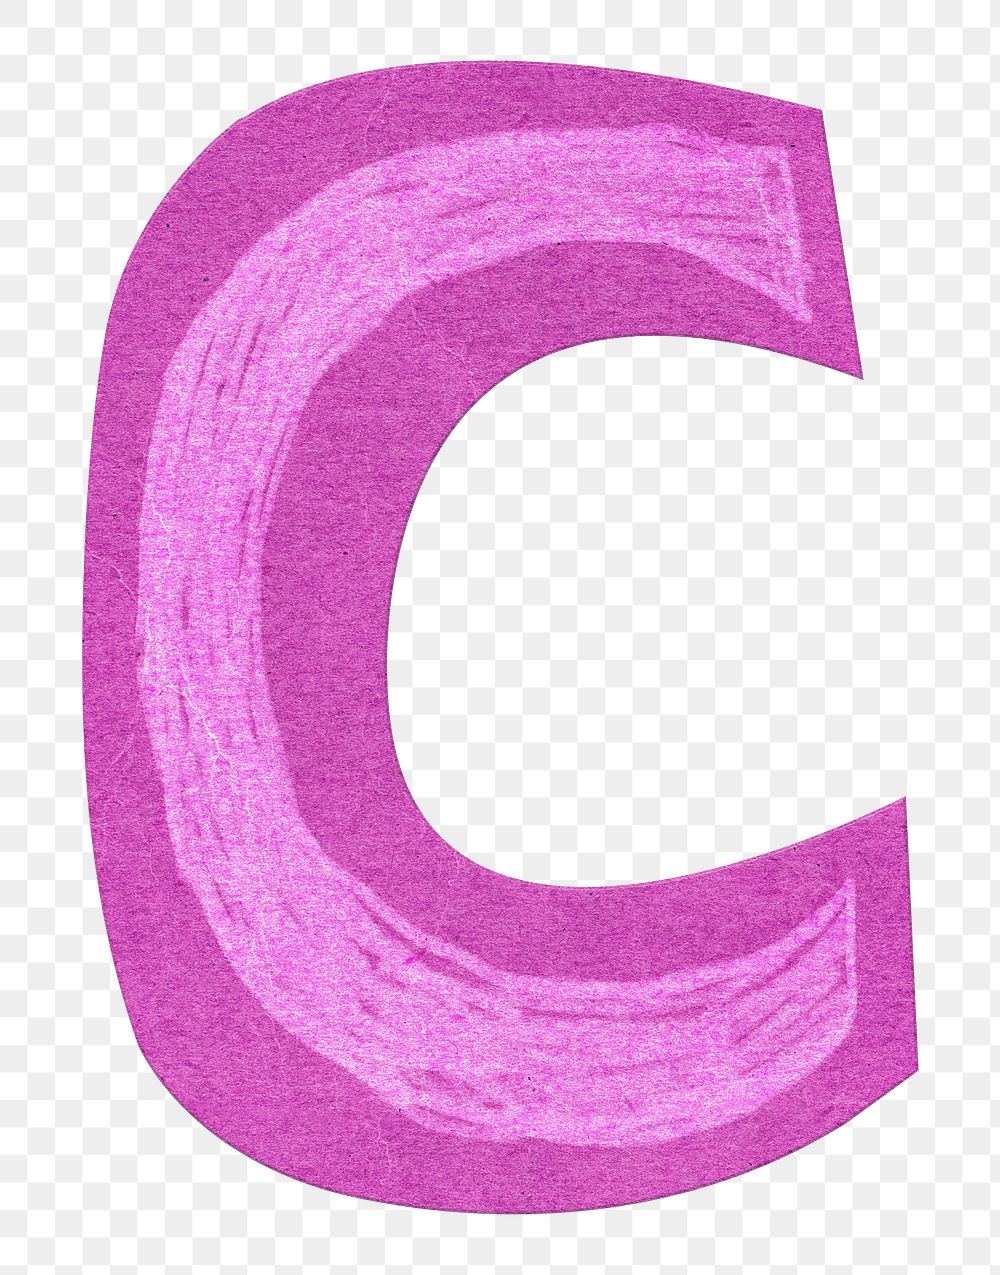 Letter C png cute paper cut alphabet, transparent background